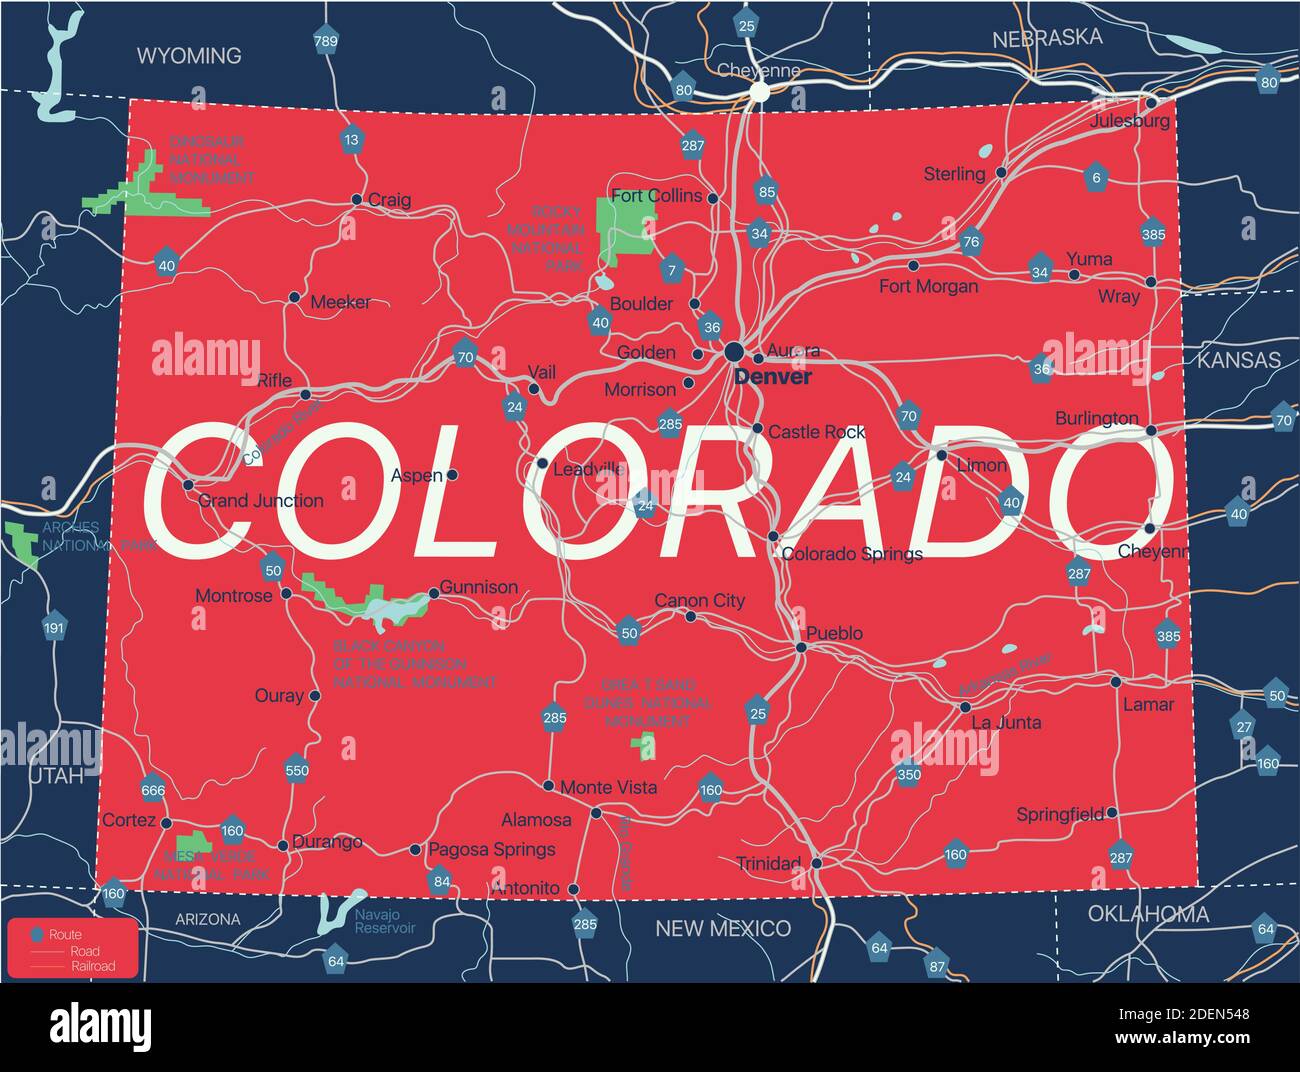 Colorado state Mappa modificabile dettagliata con città e città, siti geografici, strade, ferrovie, interstatali e autostrade statunitensi. File vettoriale EPS-10, Illustrazione Vettoriale